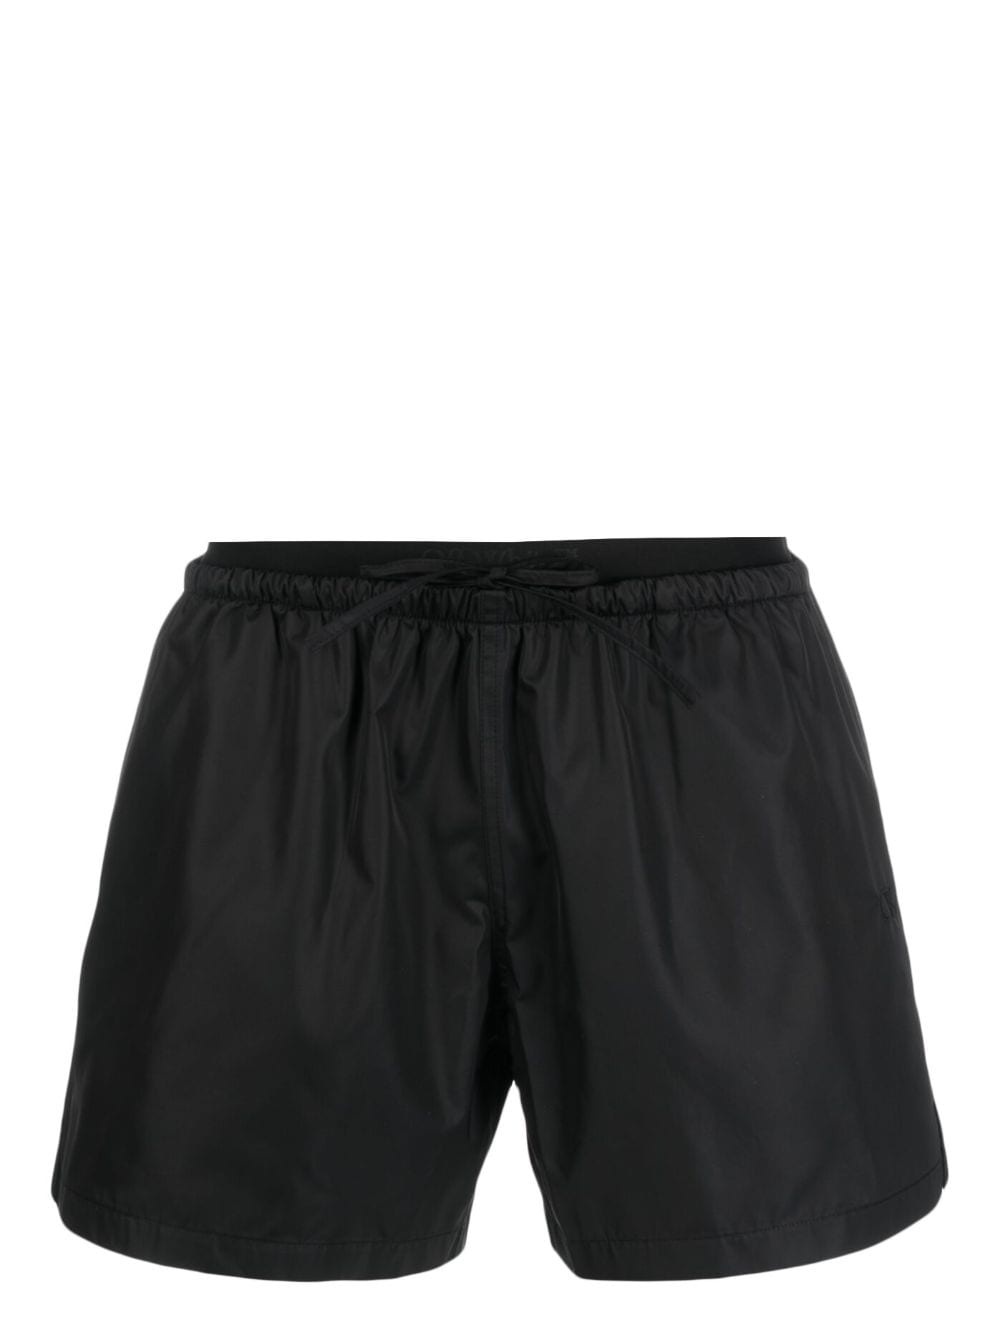 plain swimming shorts - 1